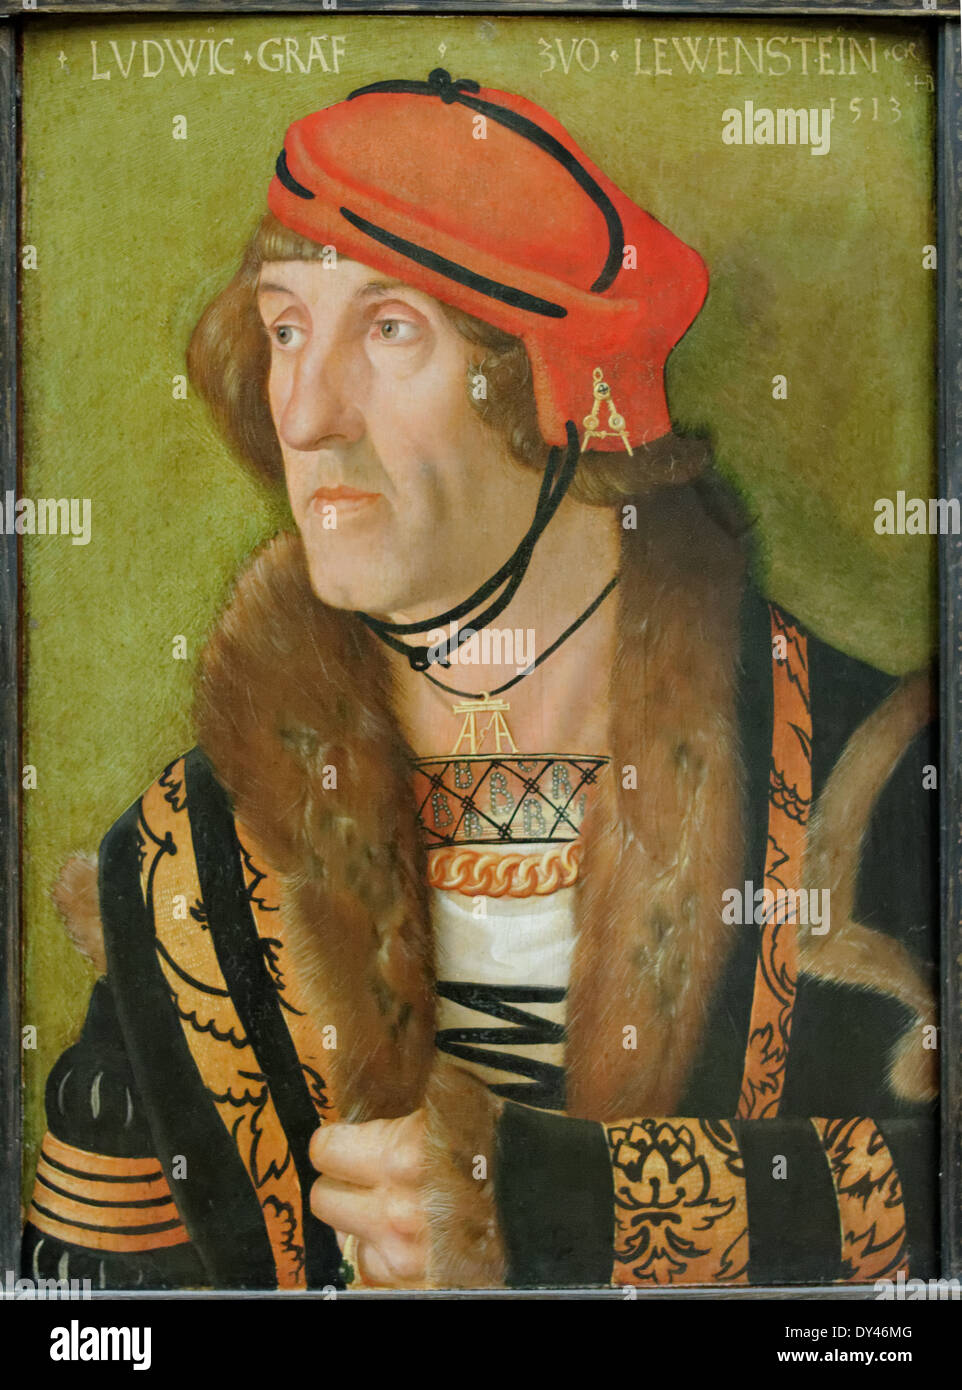 Hans Baldung Grien - Ludwig Graf zu Löwenstein - 1513 - XVI th Century - German School - Gemäldegalerie - Berlin Stock Photo